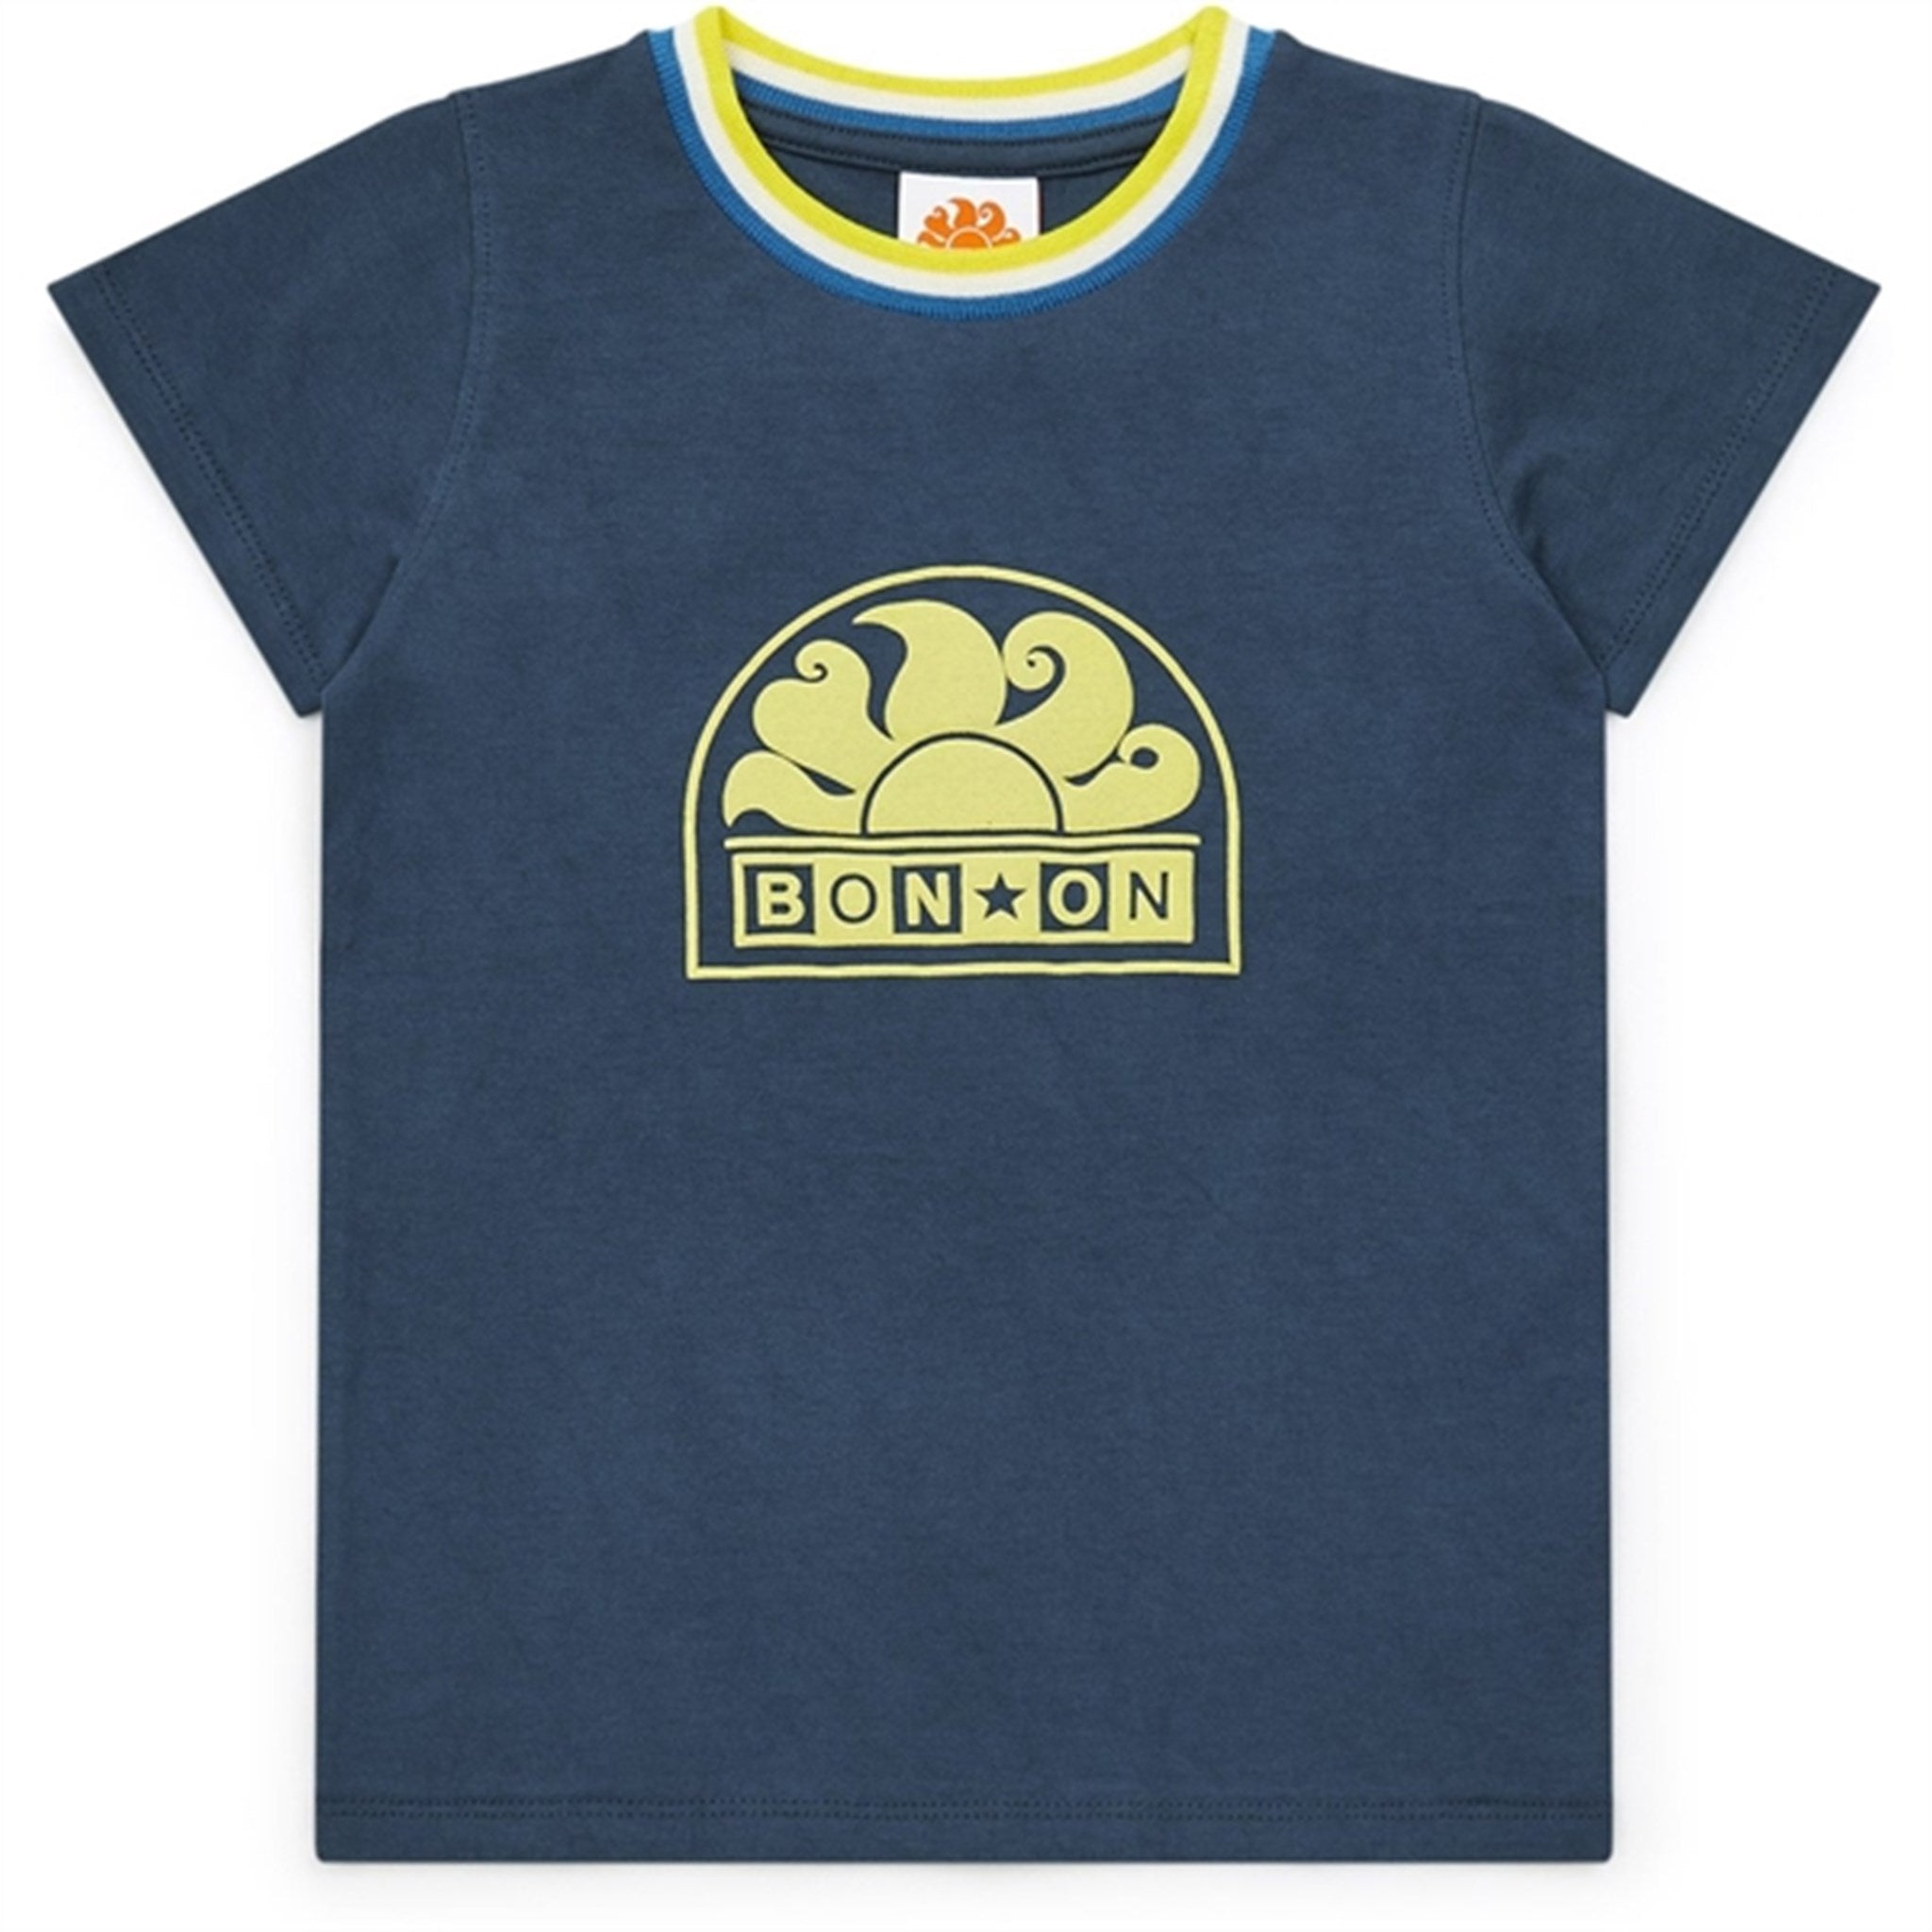 BONTON Navy Bonton T-Shirt